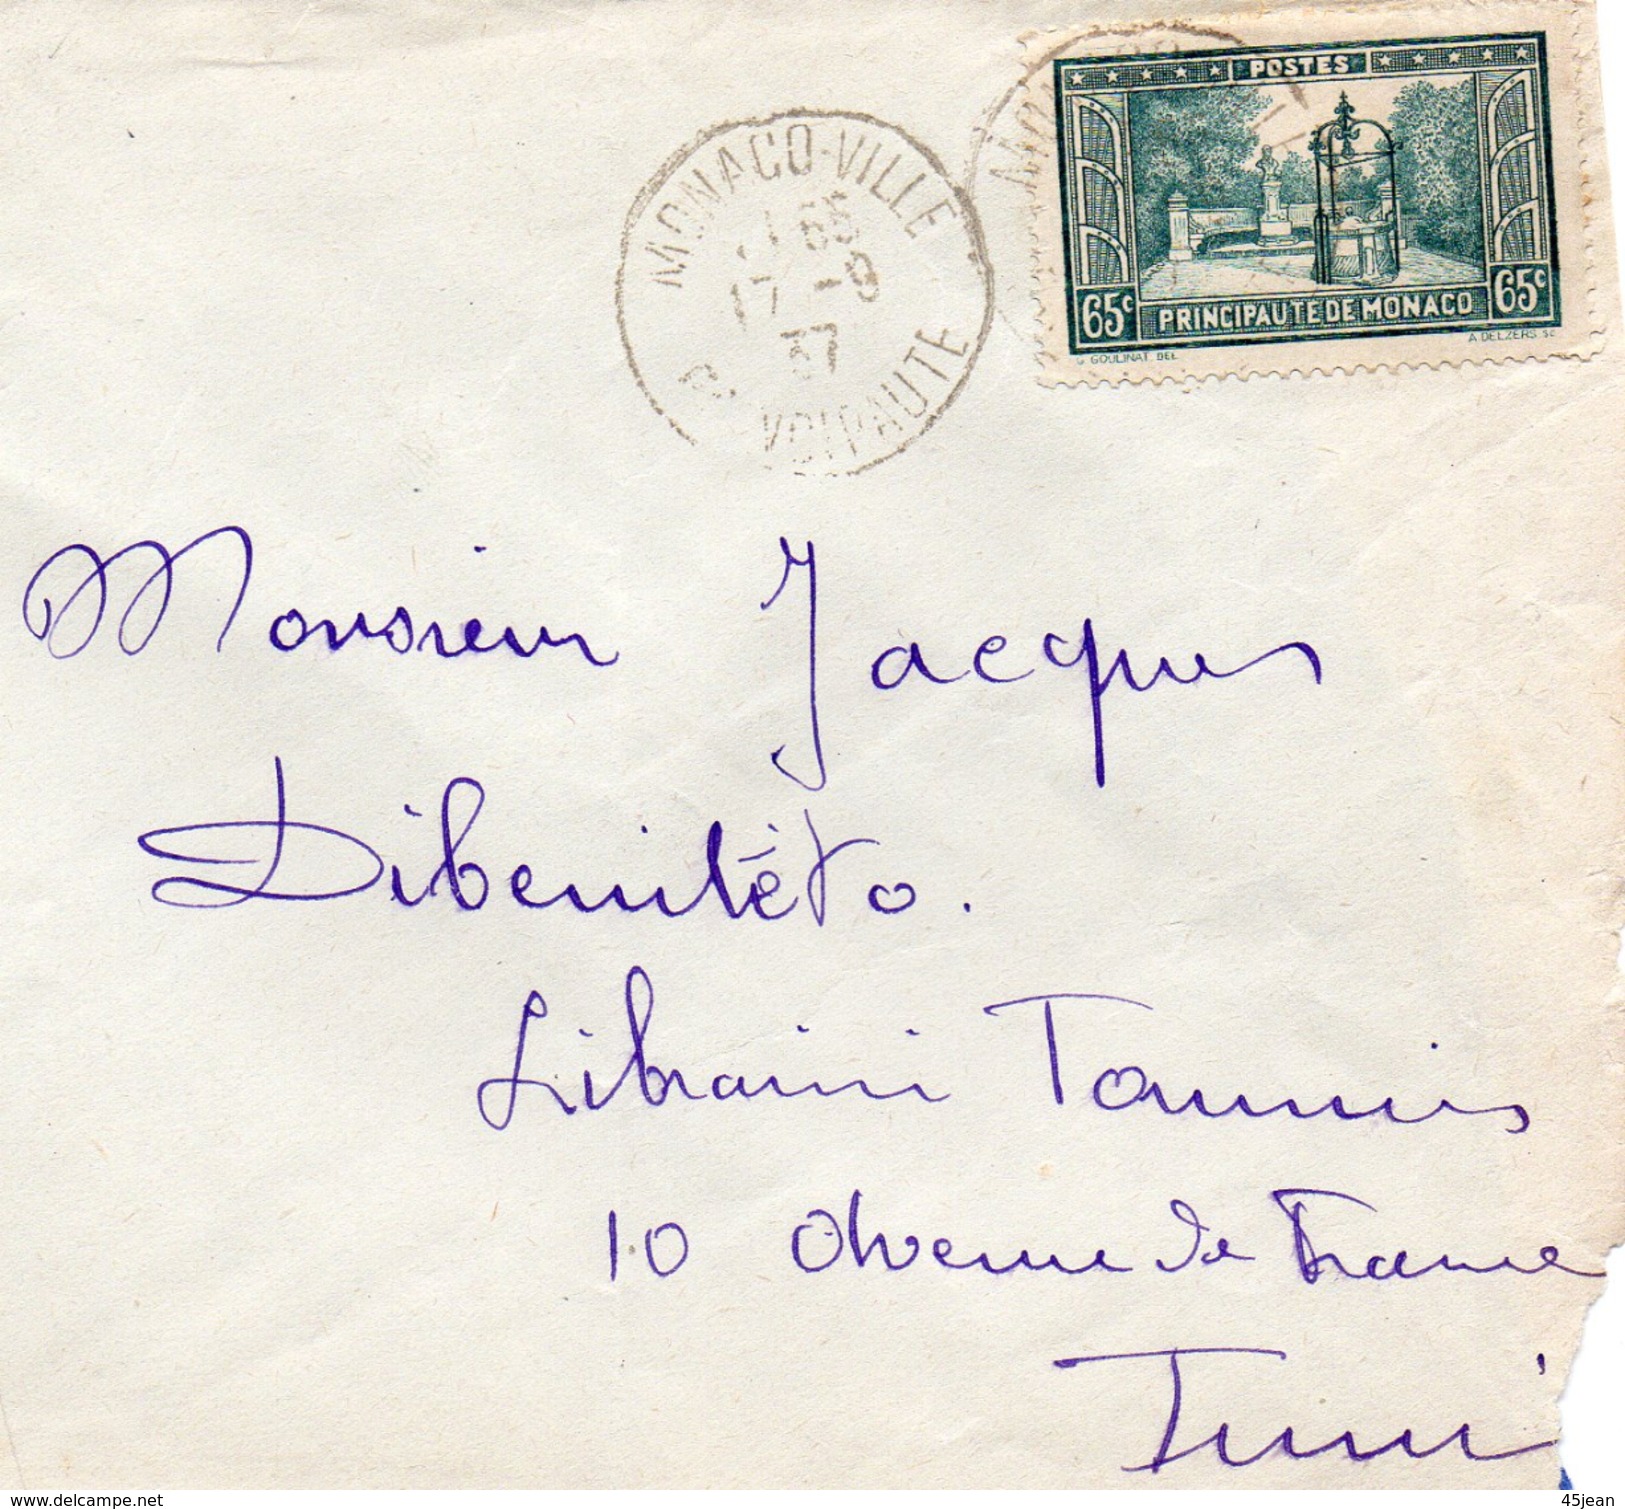 Monaco 1937 Timbre Placette François - Bosio Sur Enveloppe (01747) - Covers & Documents